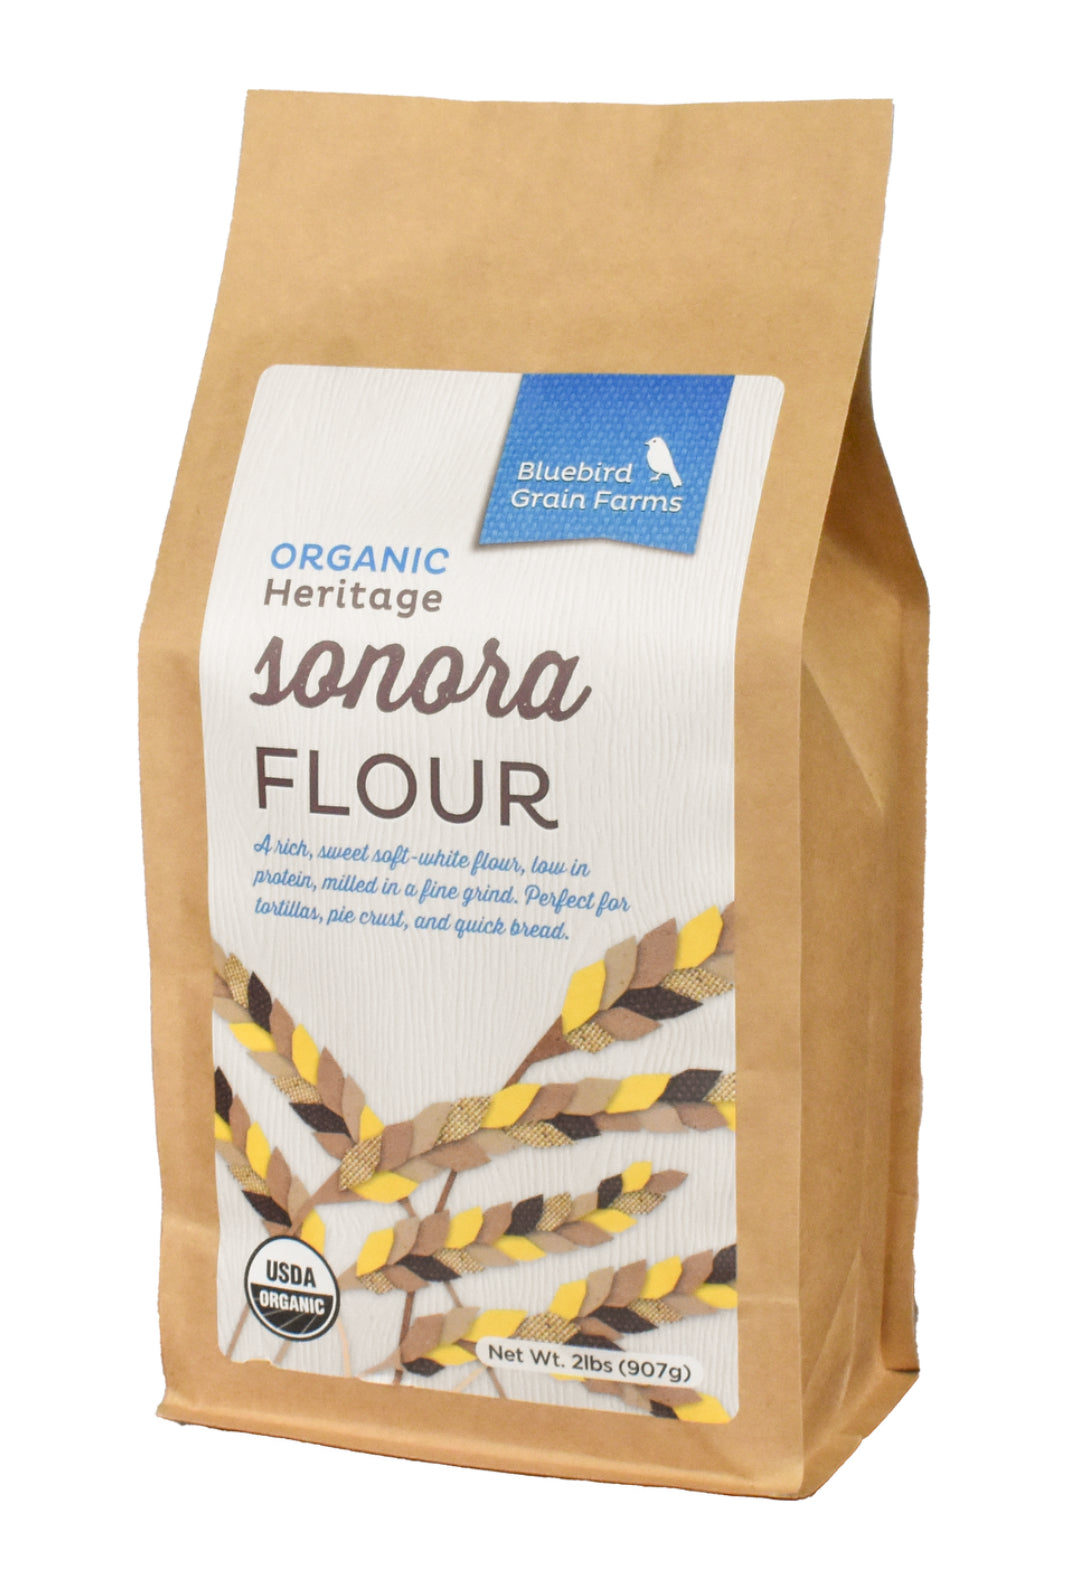 Bluebird Grain Farms Sonora Flour